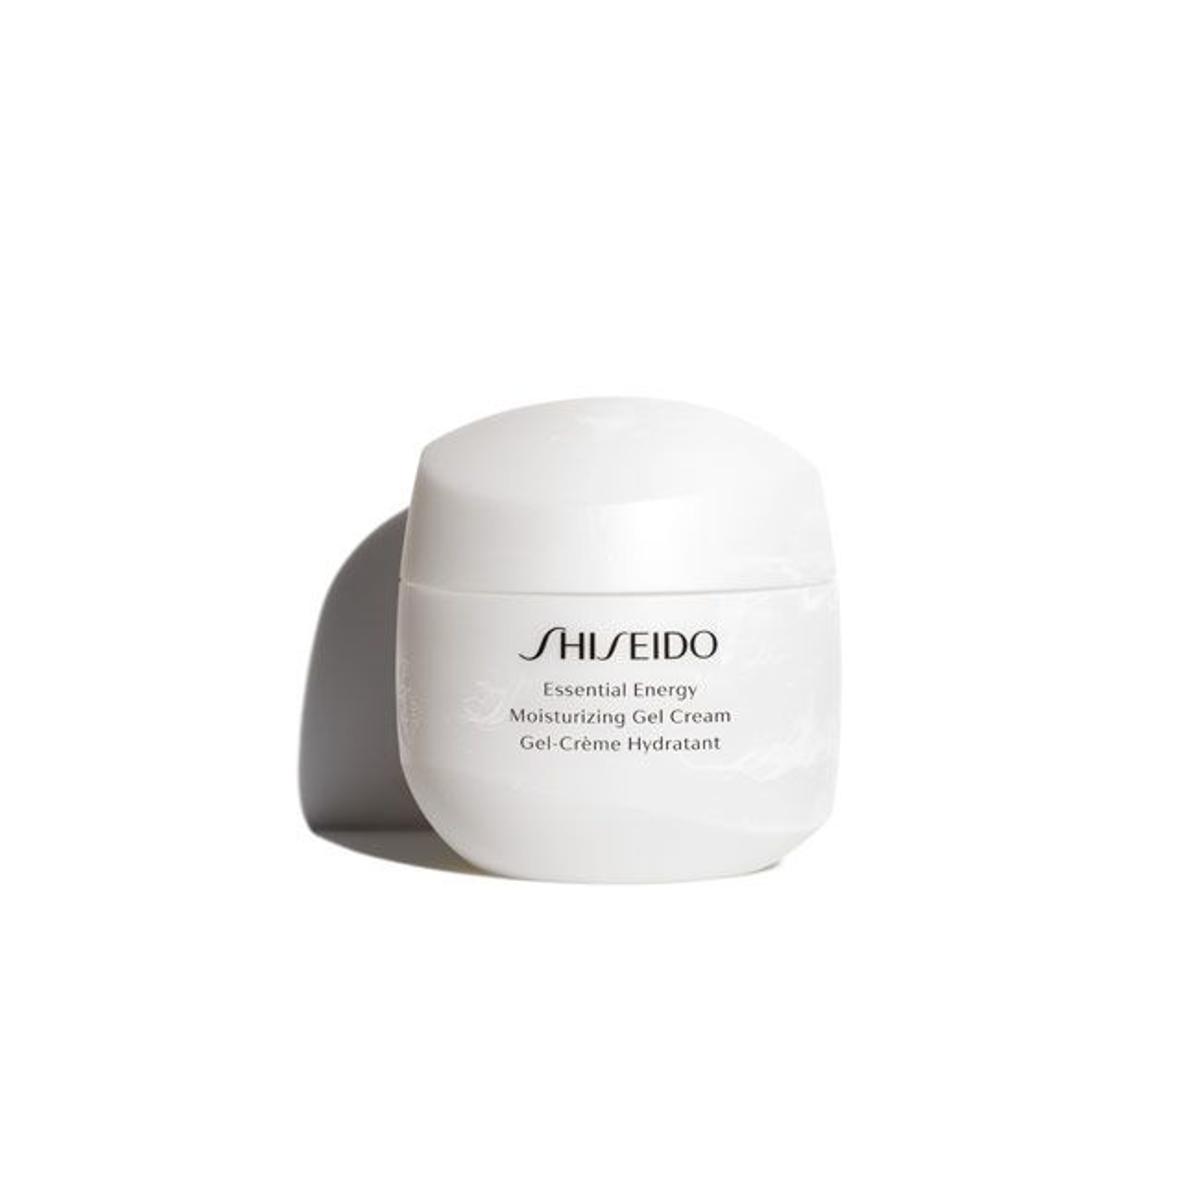 Crema hidratante en gel de la gama 'Essential Energy' de Shiseido